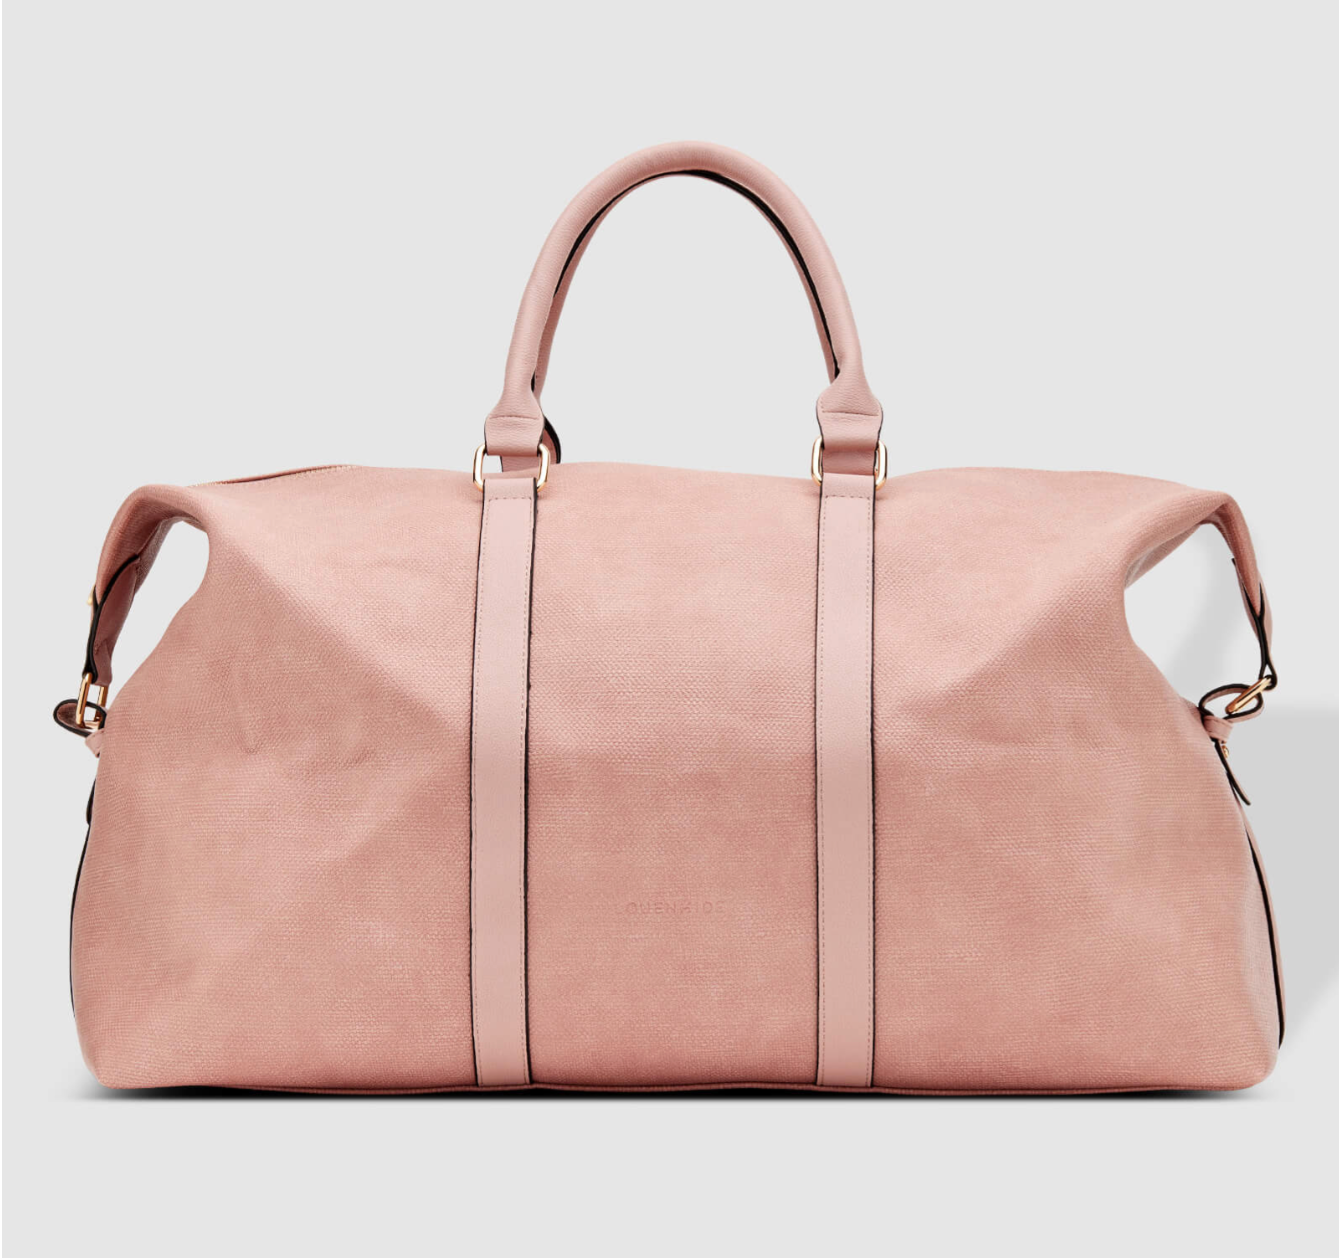 Boston Weekender Travel Bag - Dusty Pink